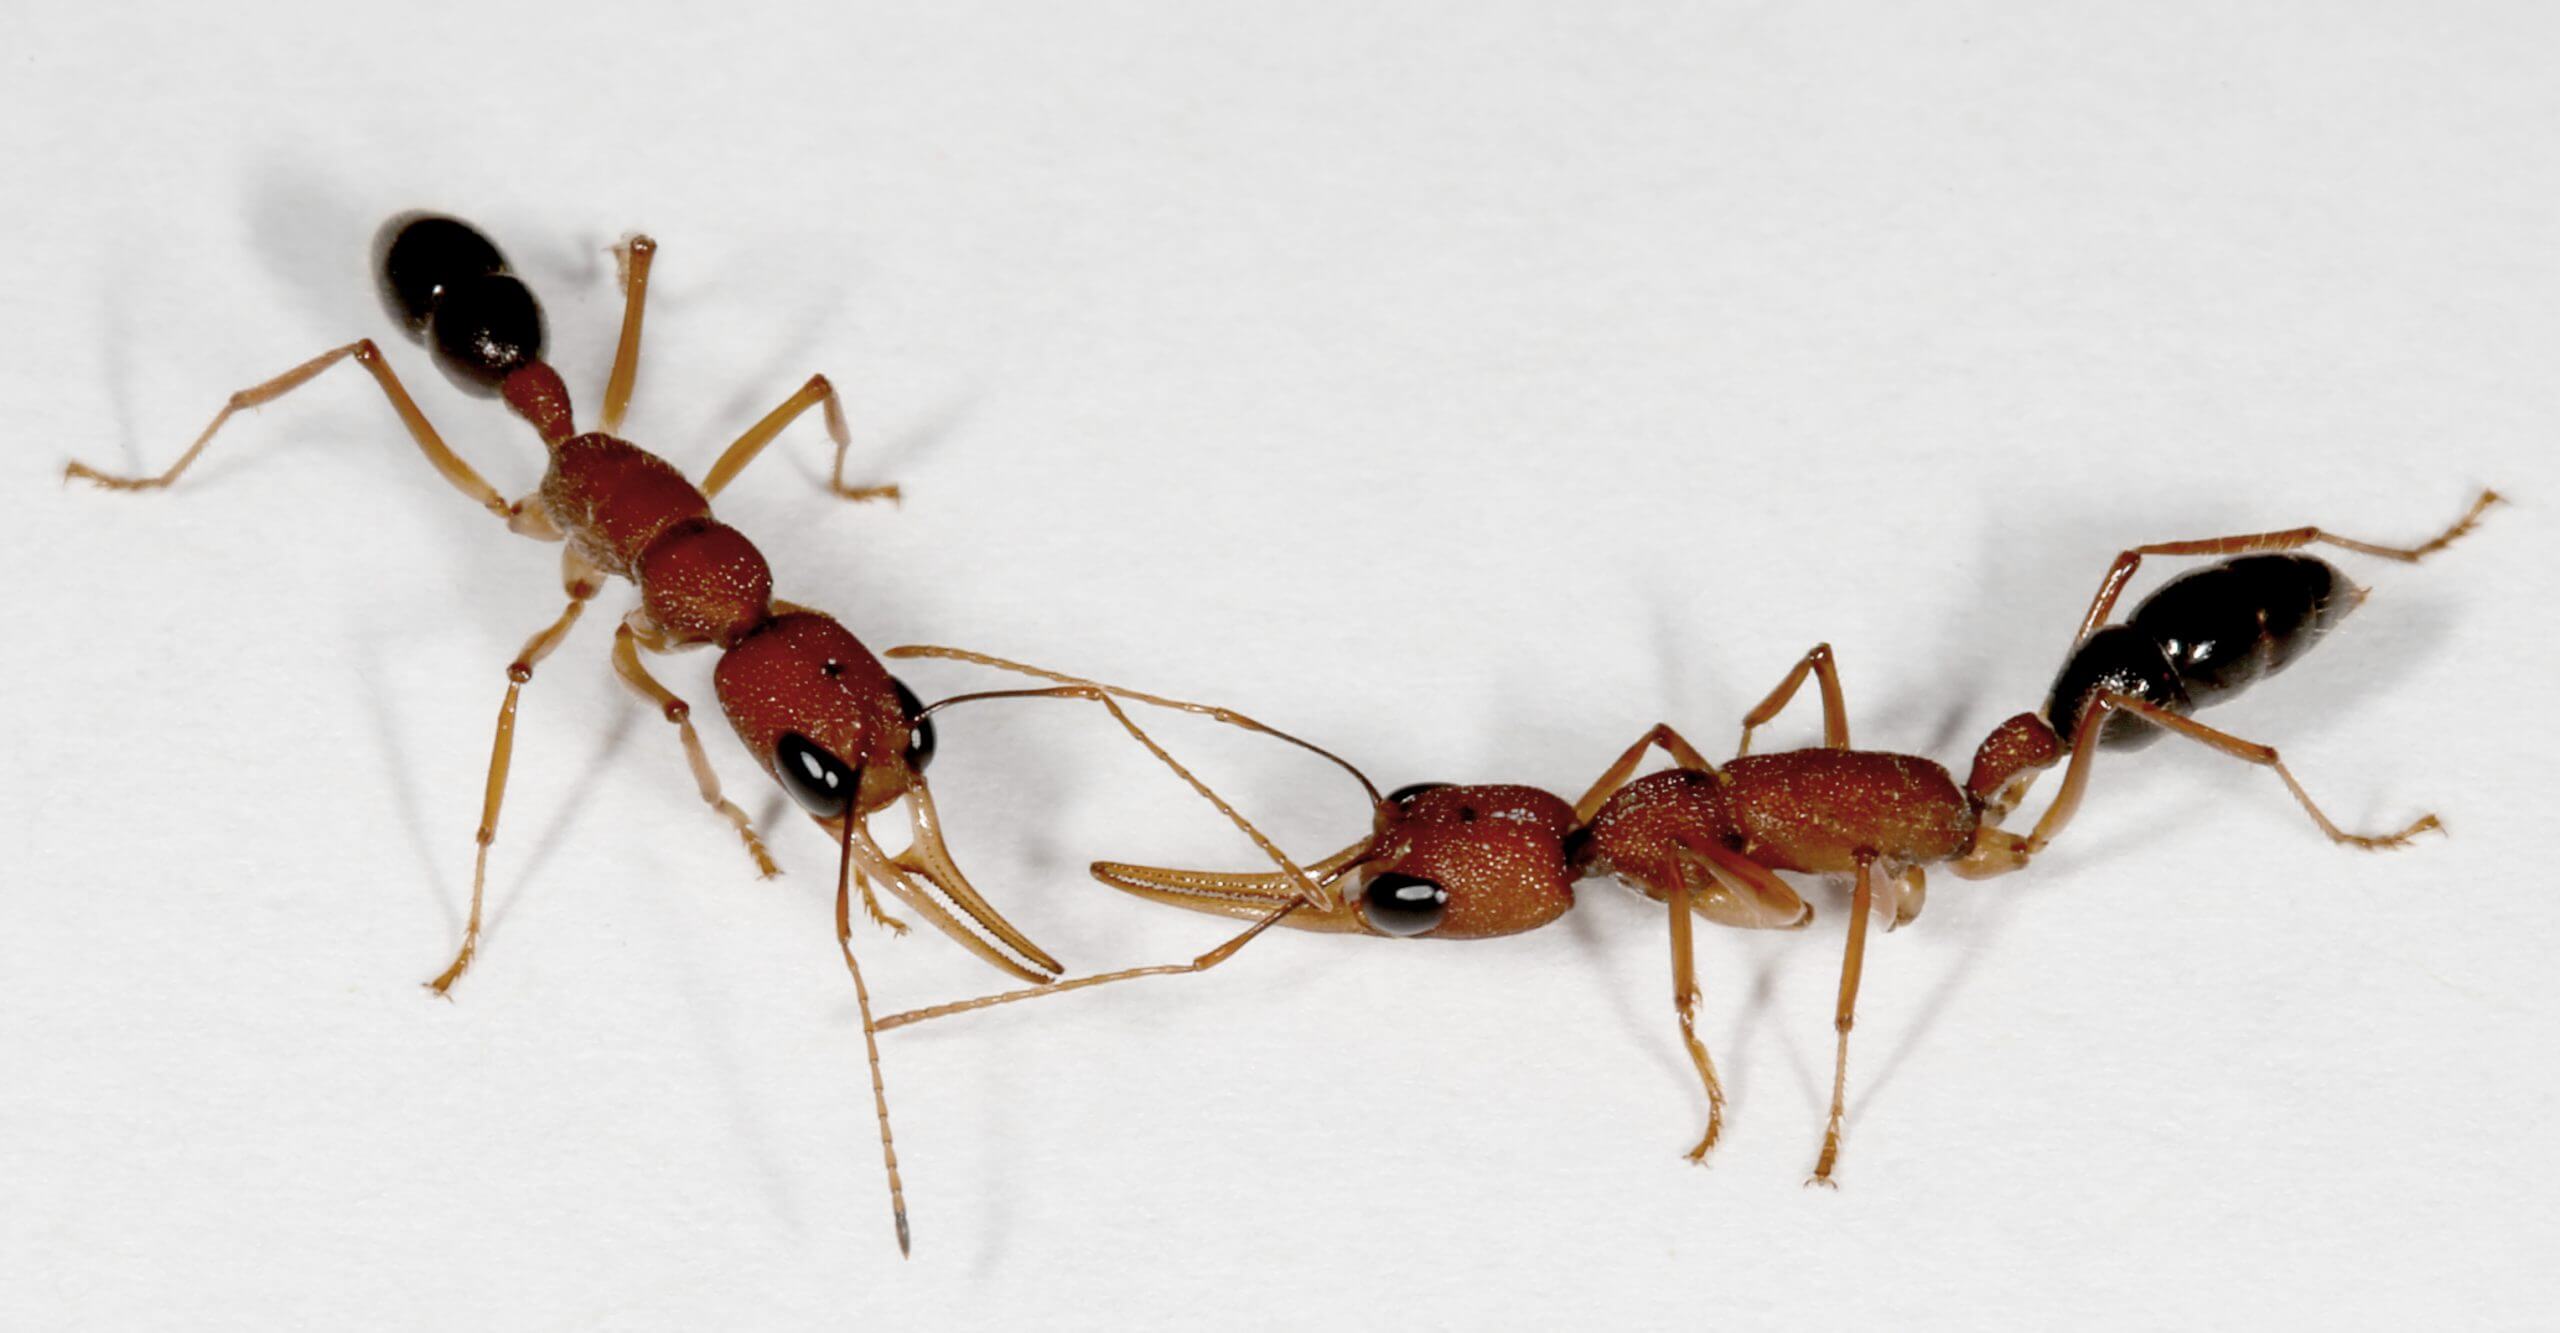 Harpegnathos worker ants interacting. Photo: Jürgen Liebig/ASU